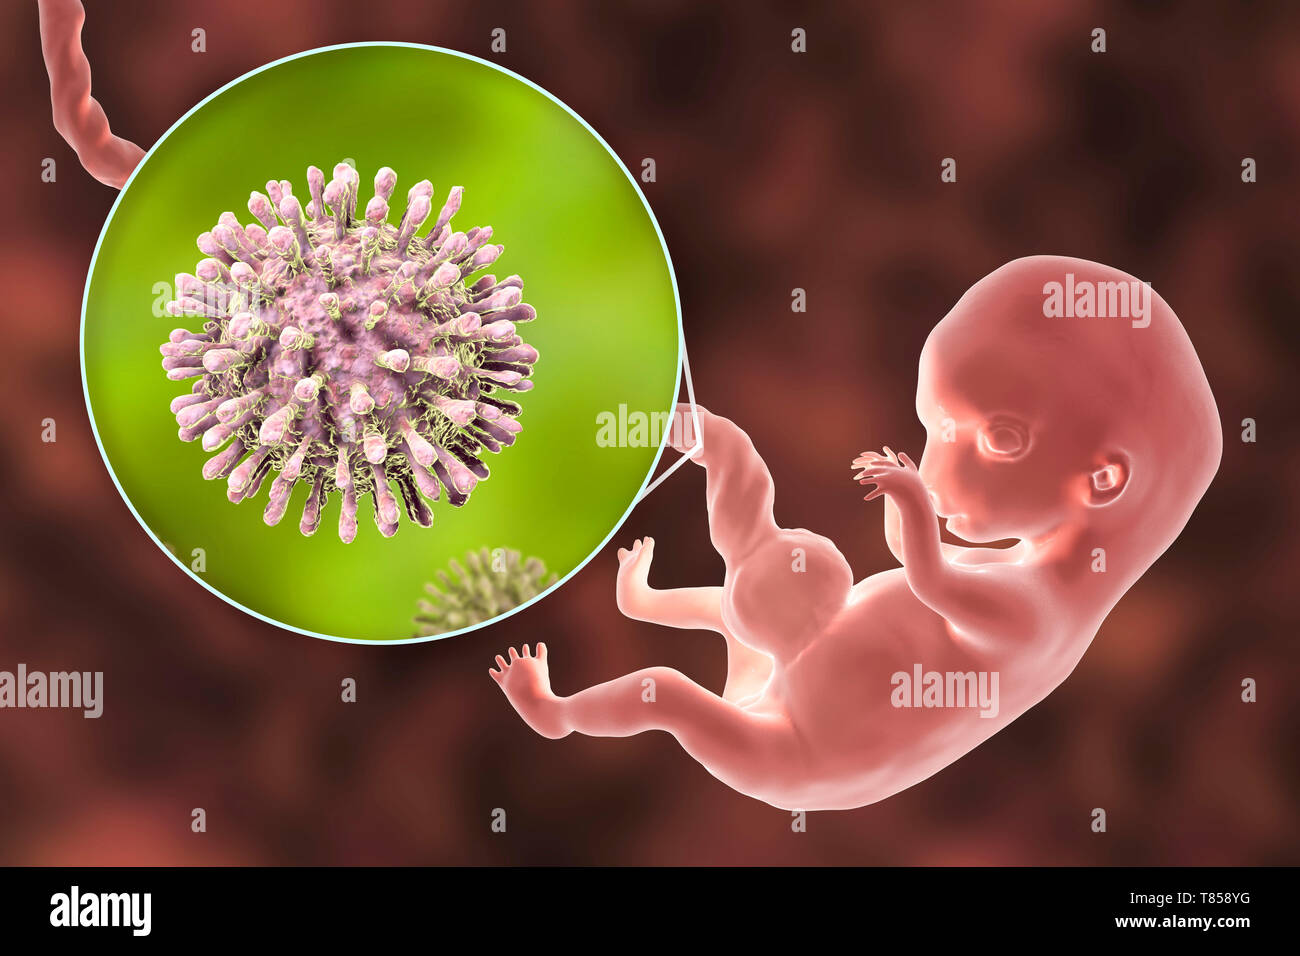 Le VIH infecte les droits de l'embryon, illustration Banque D'Images